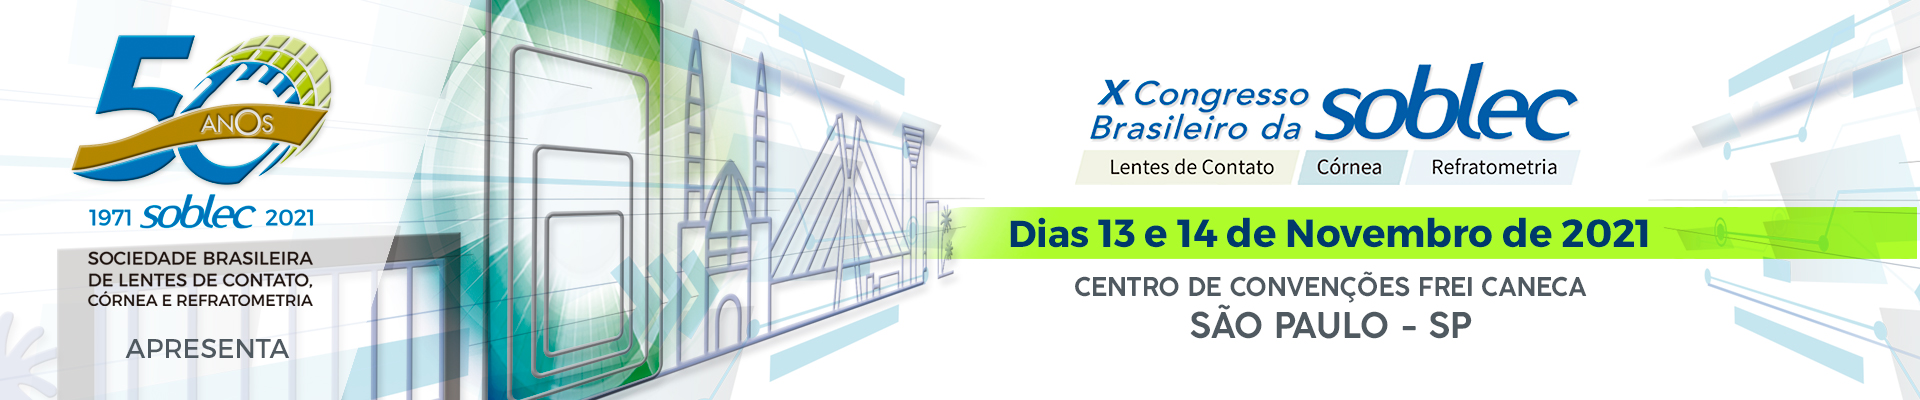 X Congresso Brasileiro da SOBLEC